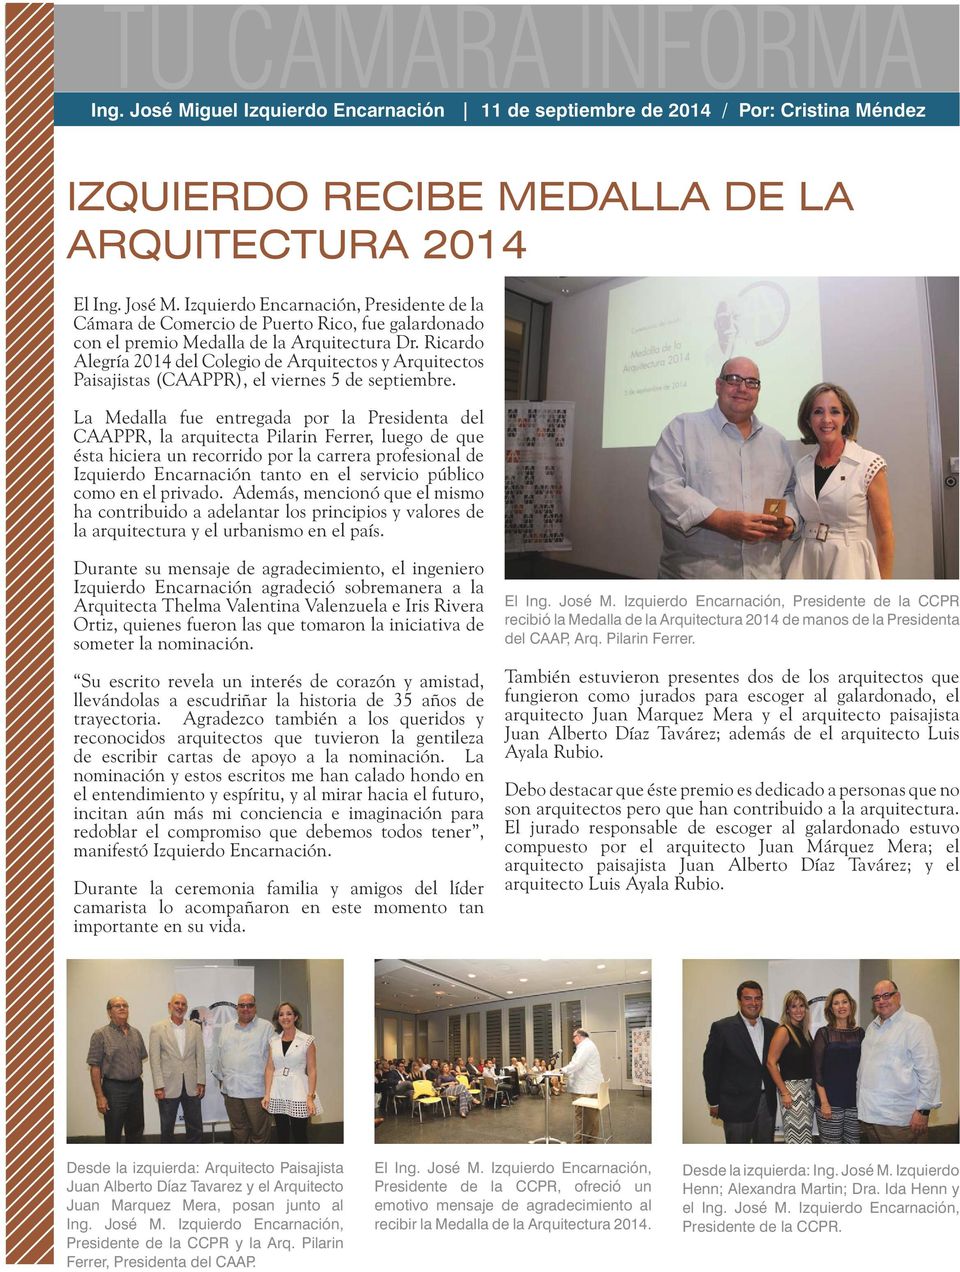 La Medalla fue entregada por la Presidenta del CAAPPR, la arquitecta Pilarin Ferrer, luego de que ésta hiciera un recorrido por la carrera profesional de Izquierdo Encarnación tanto en el servicio